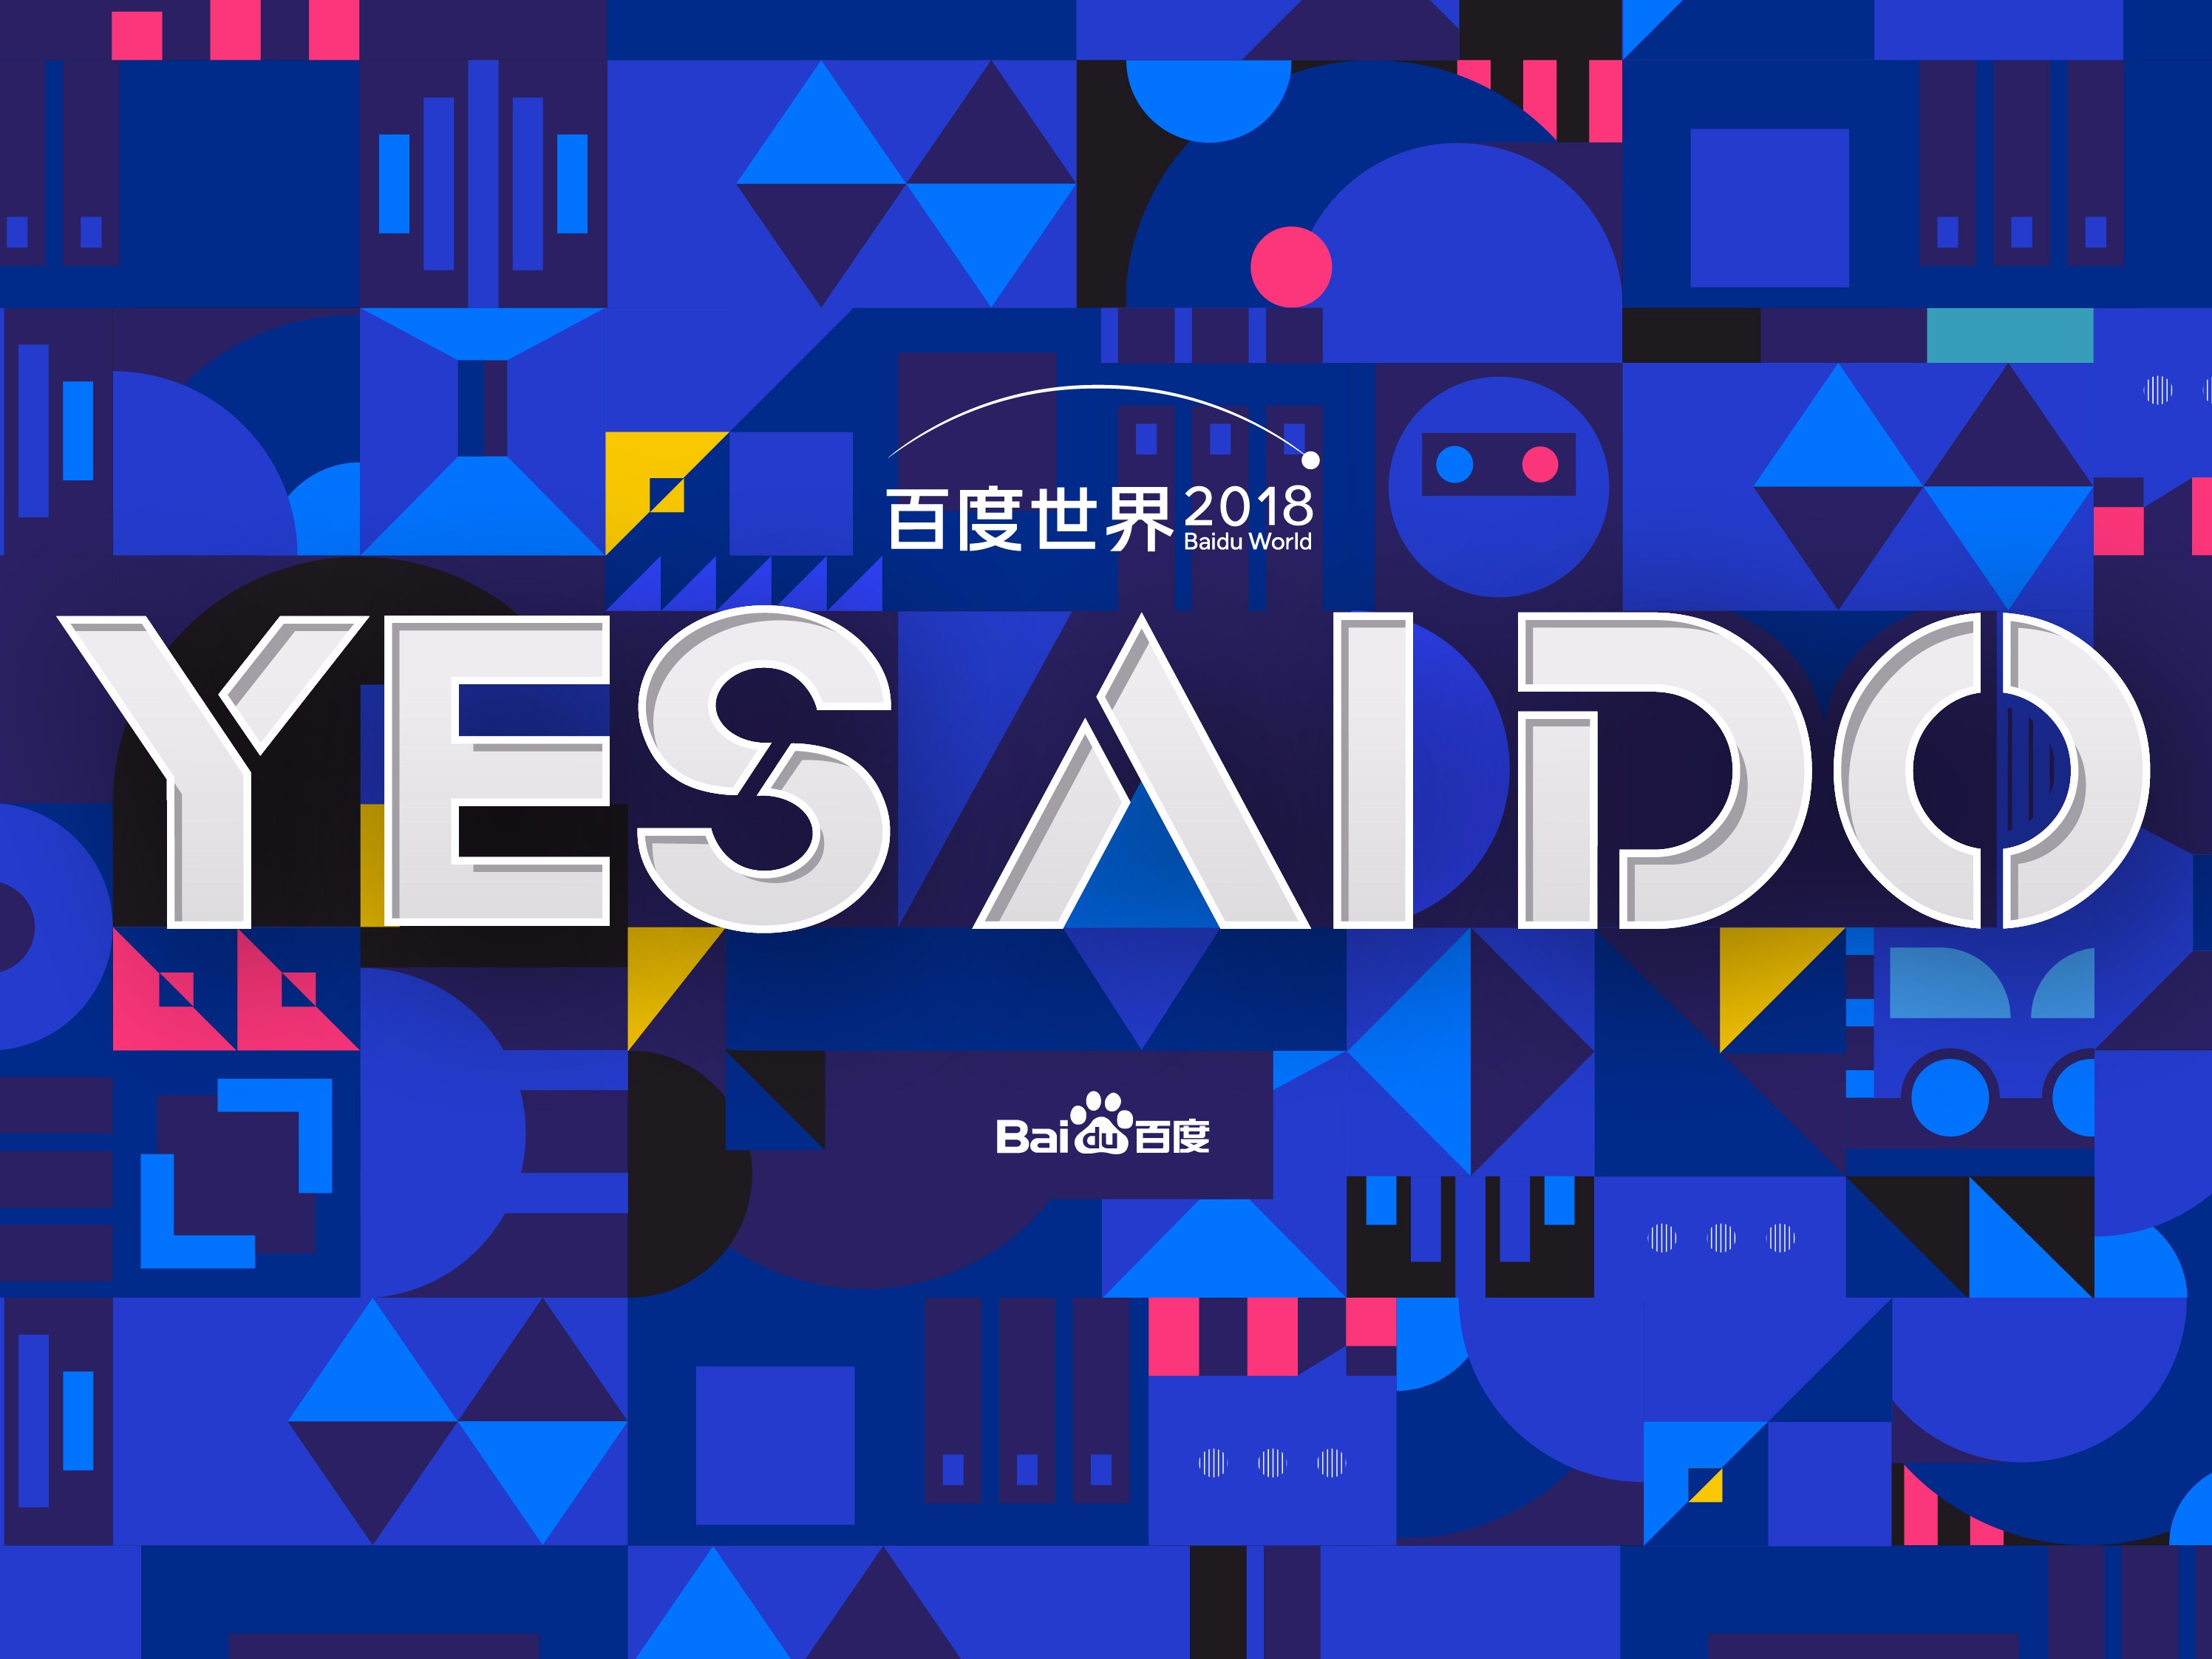 【2018百度世界大会“Yes, AI Do”】VI / 会场设计